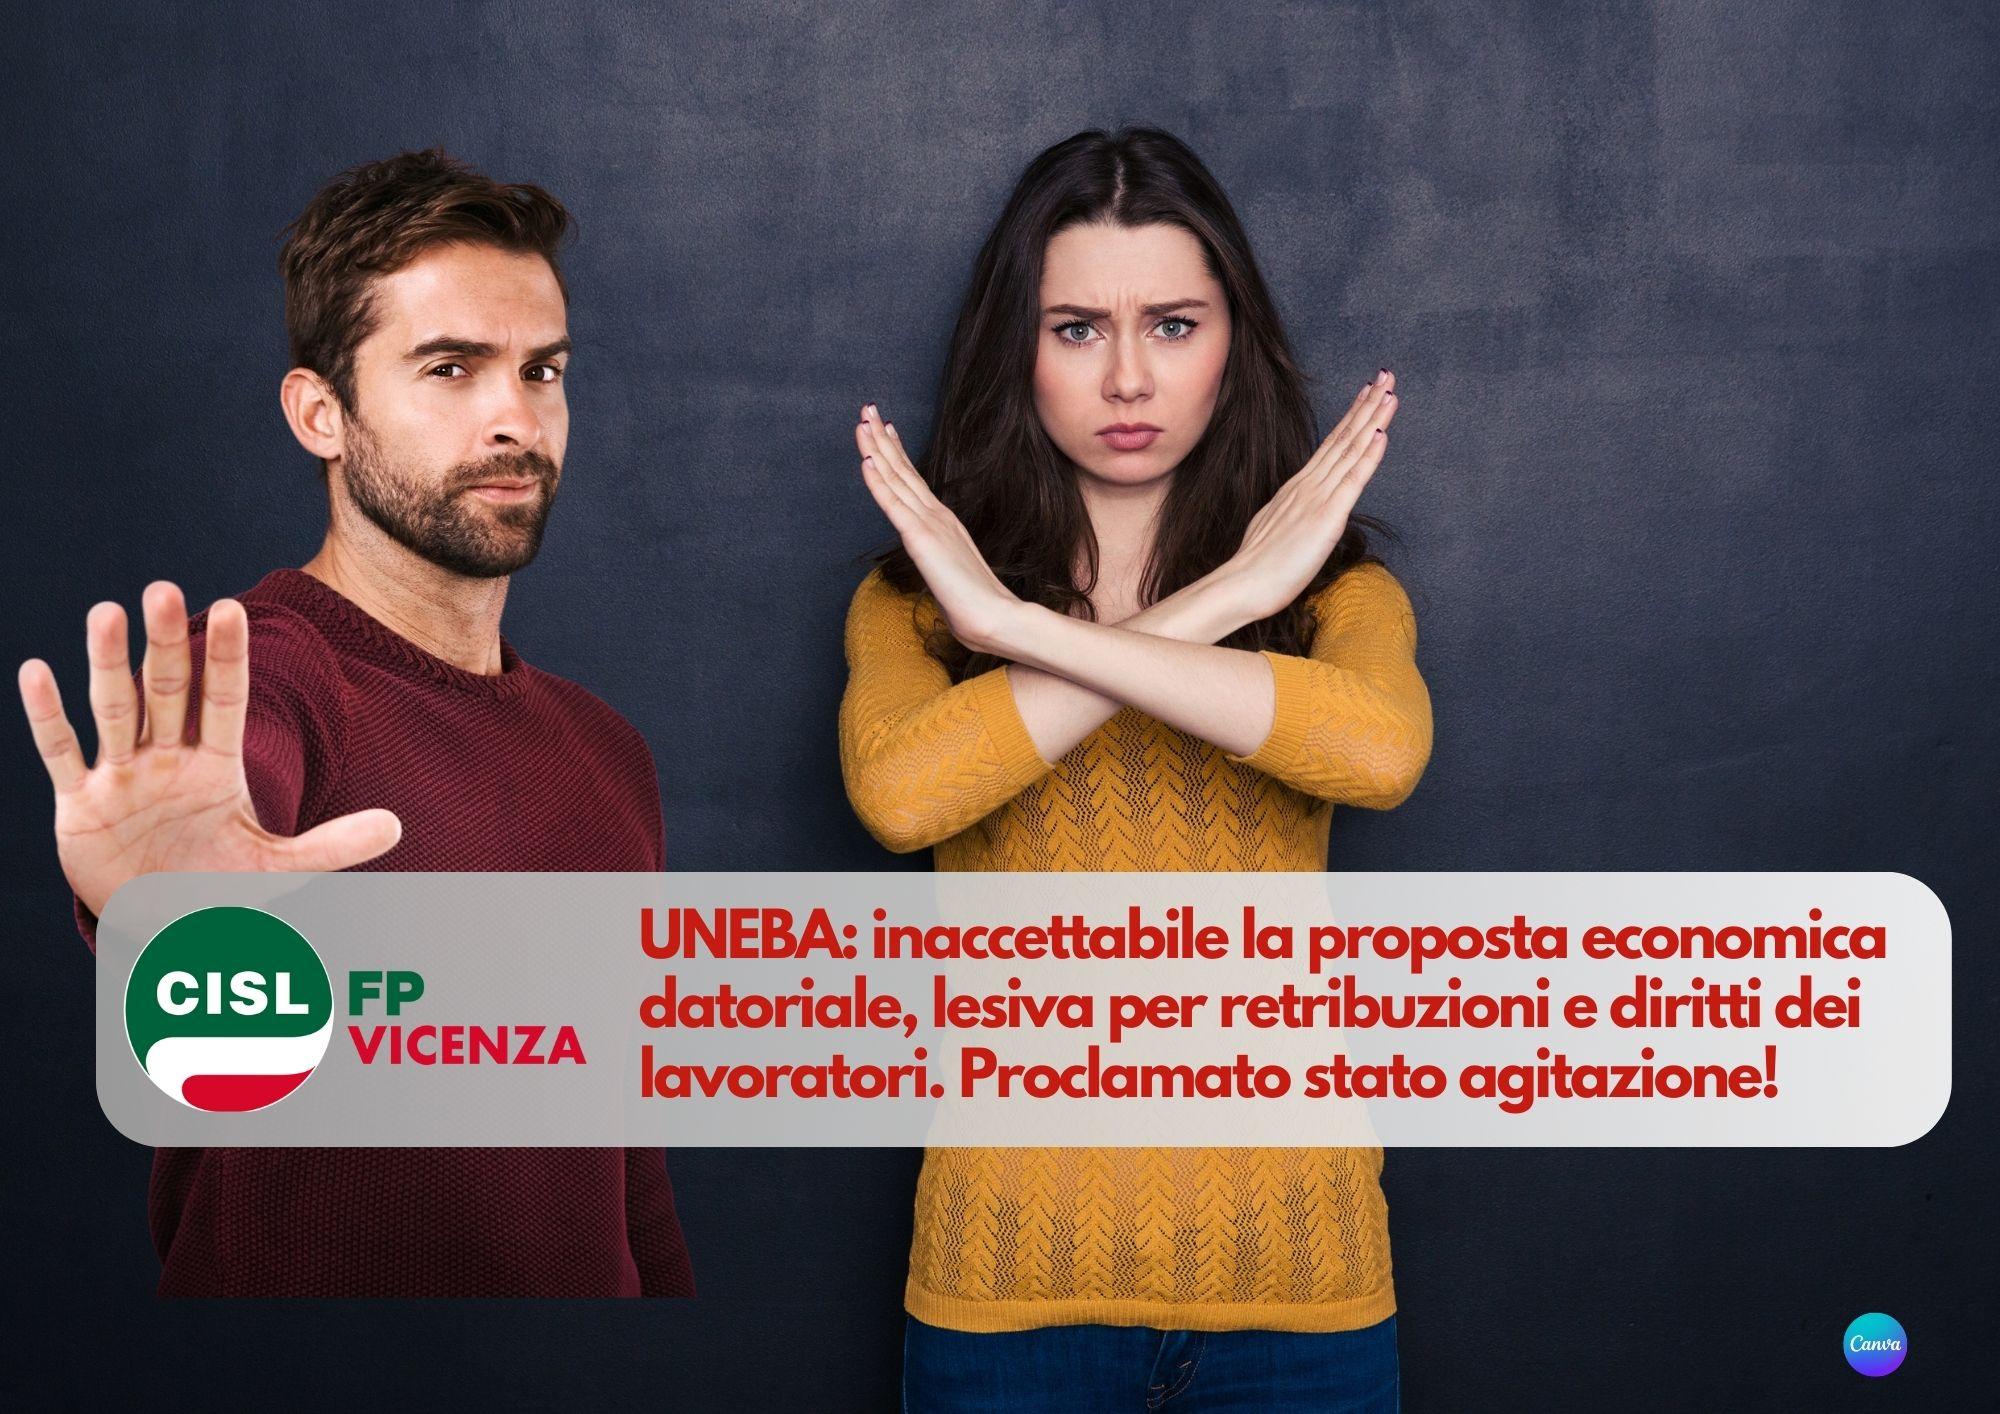 CISL FP Vicenza. UNEBA inaccettabile la proposta economica datoriale. Proclamato stato agitazione